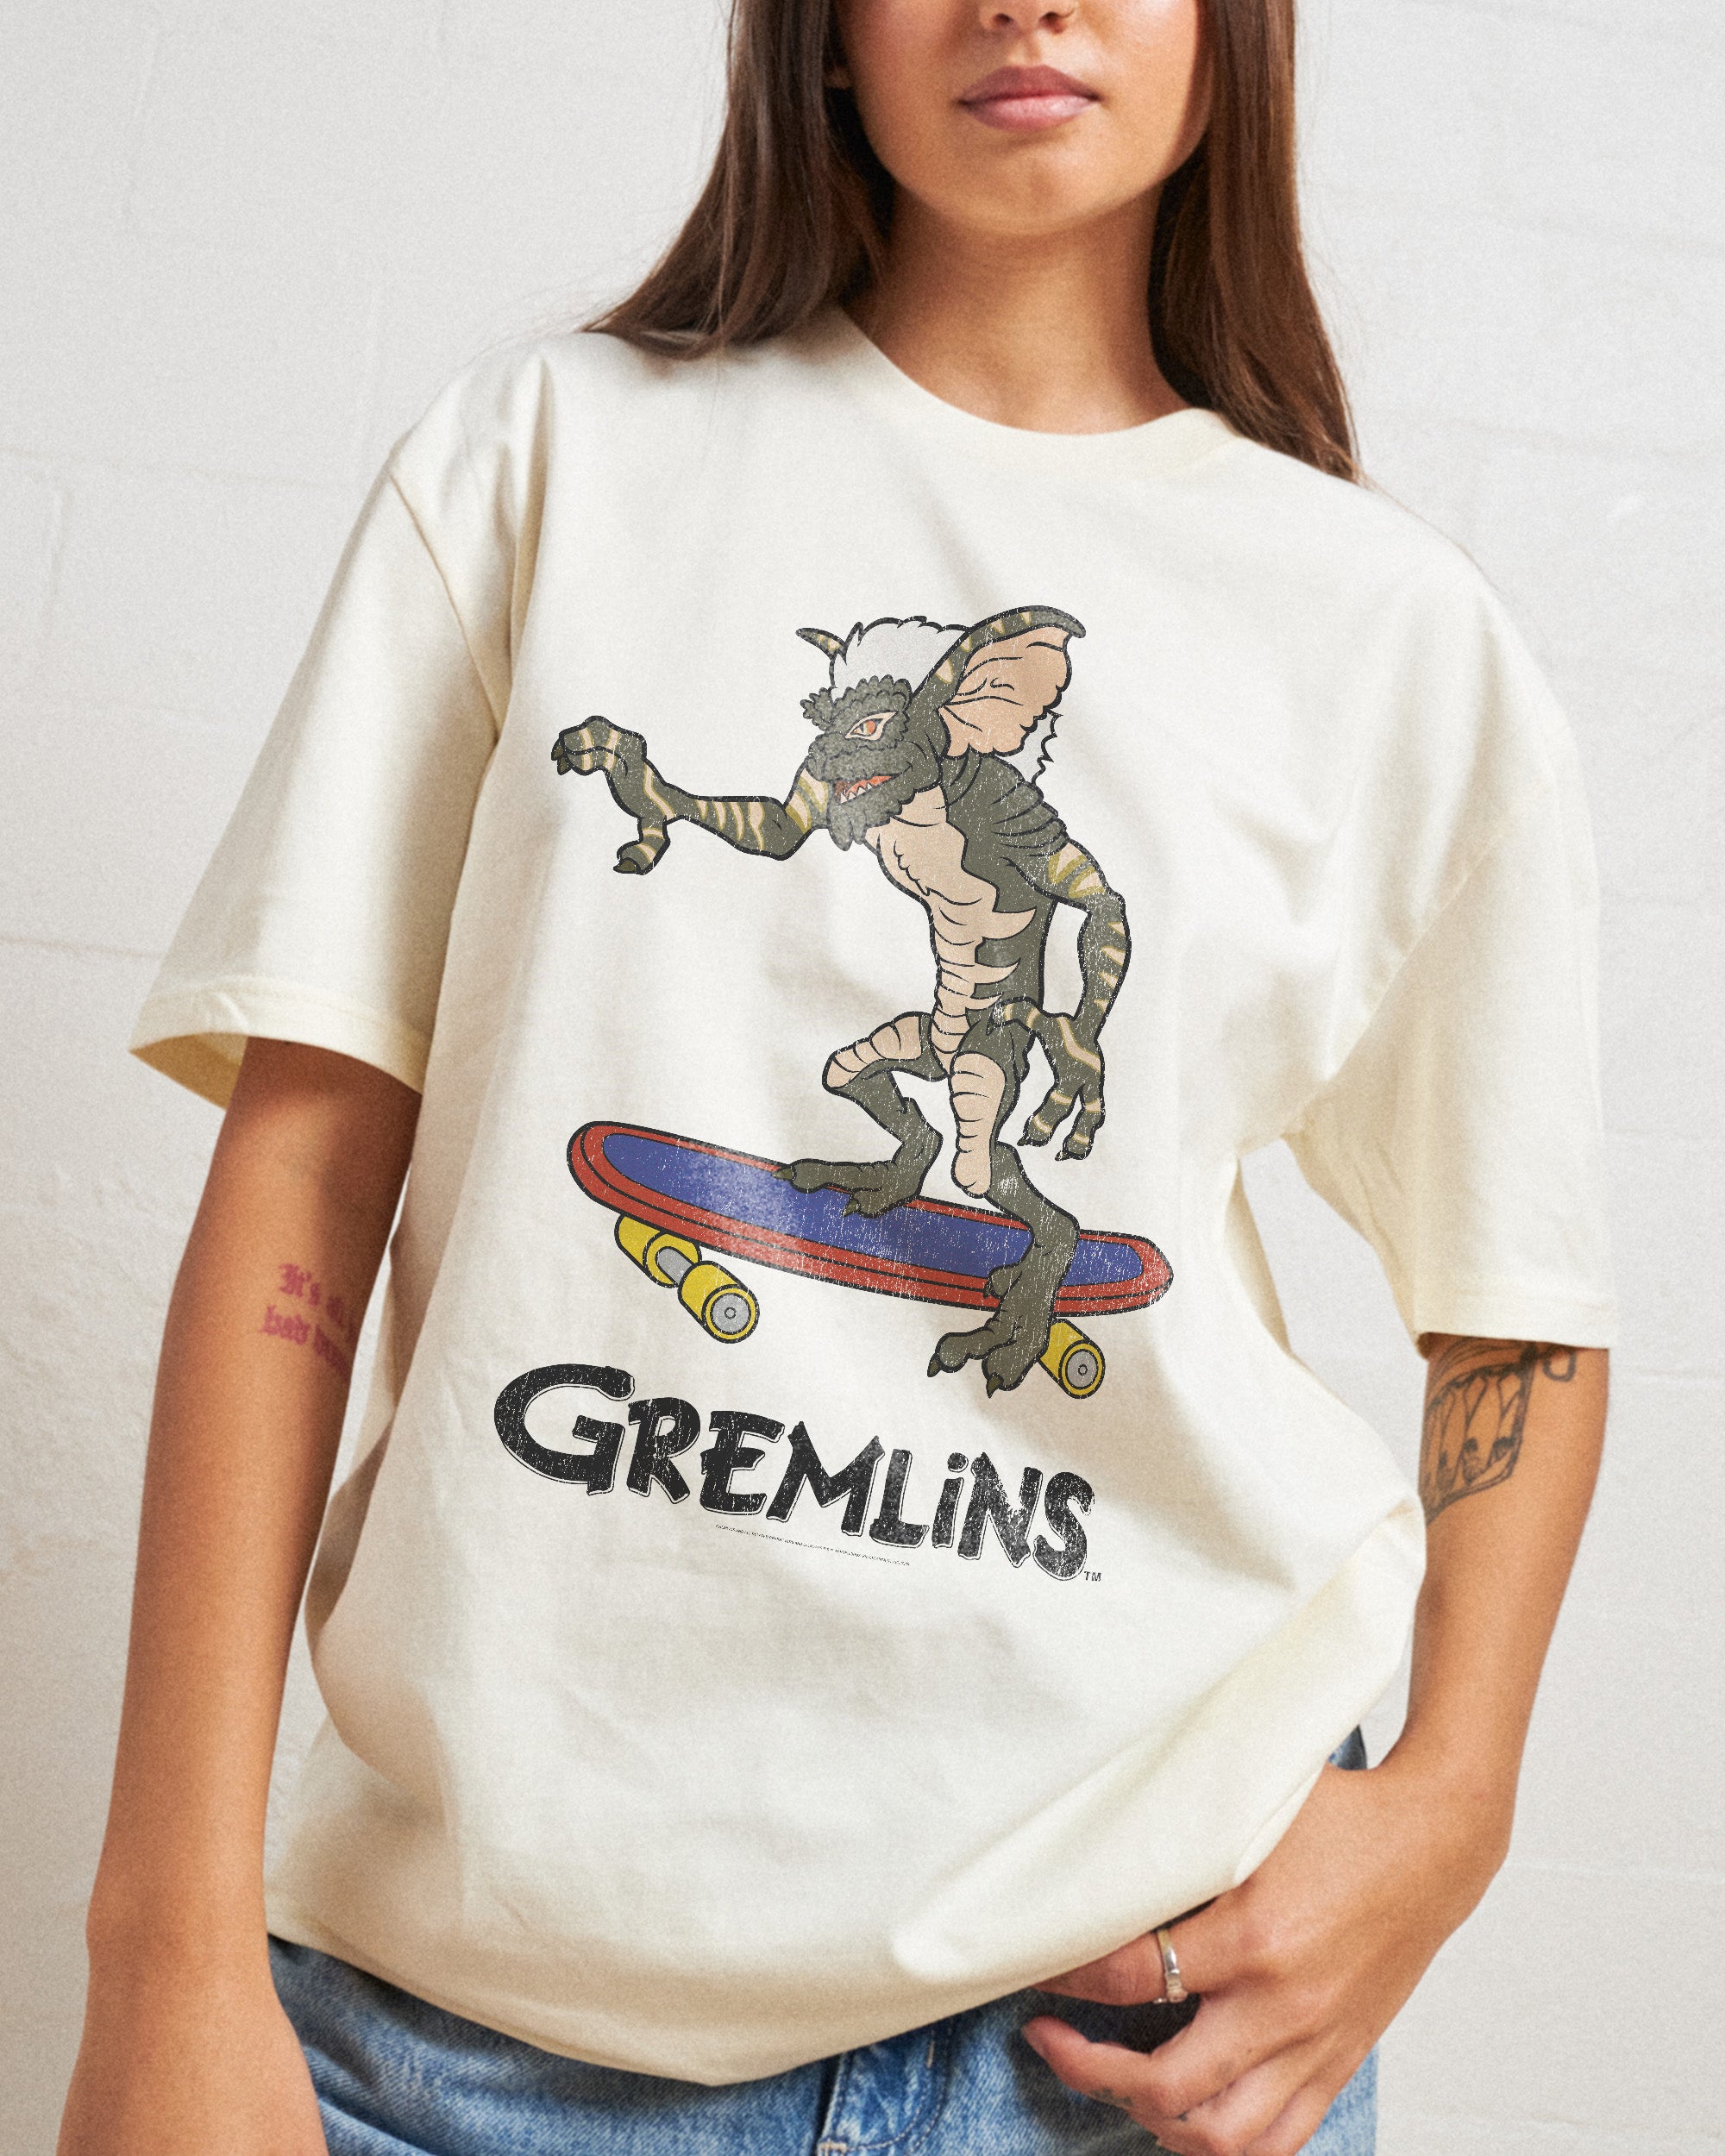 Gremlins Skate T-Shirt